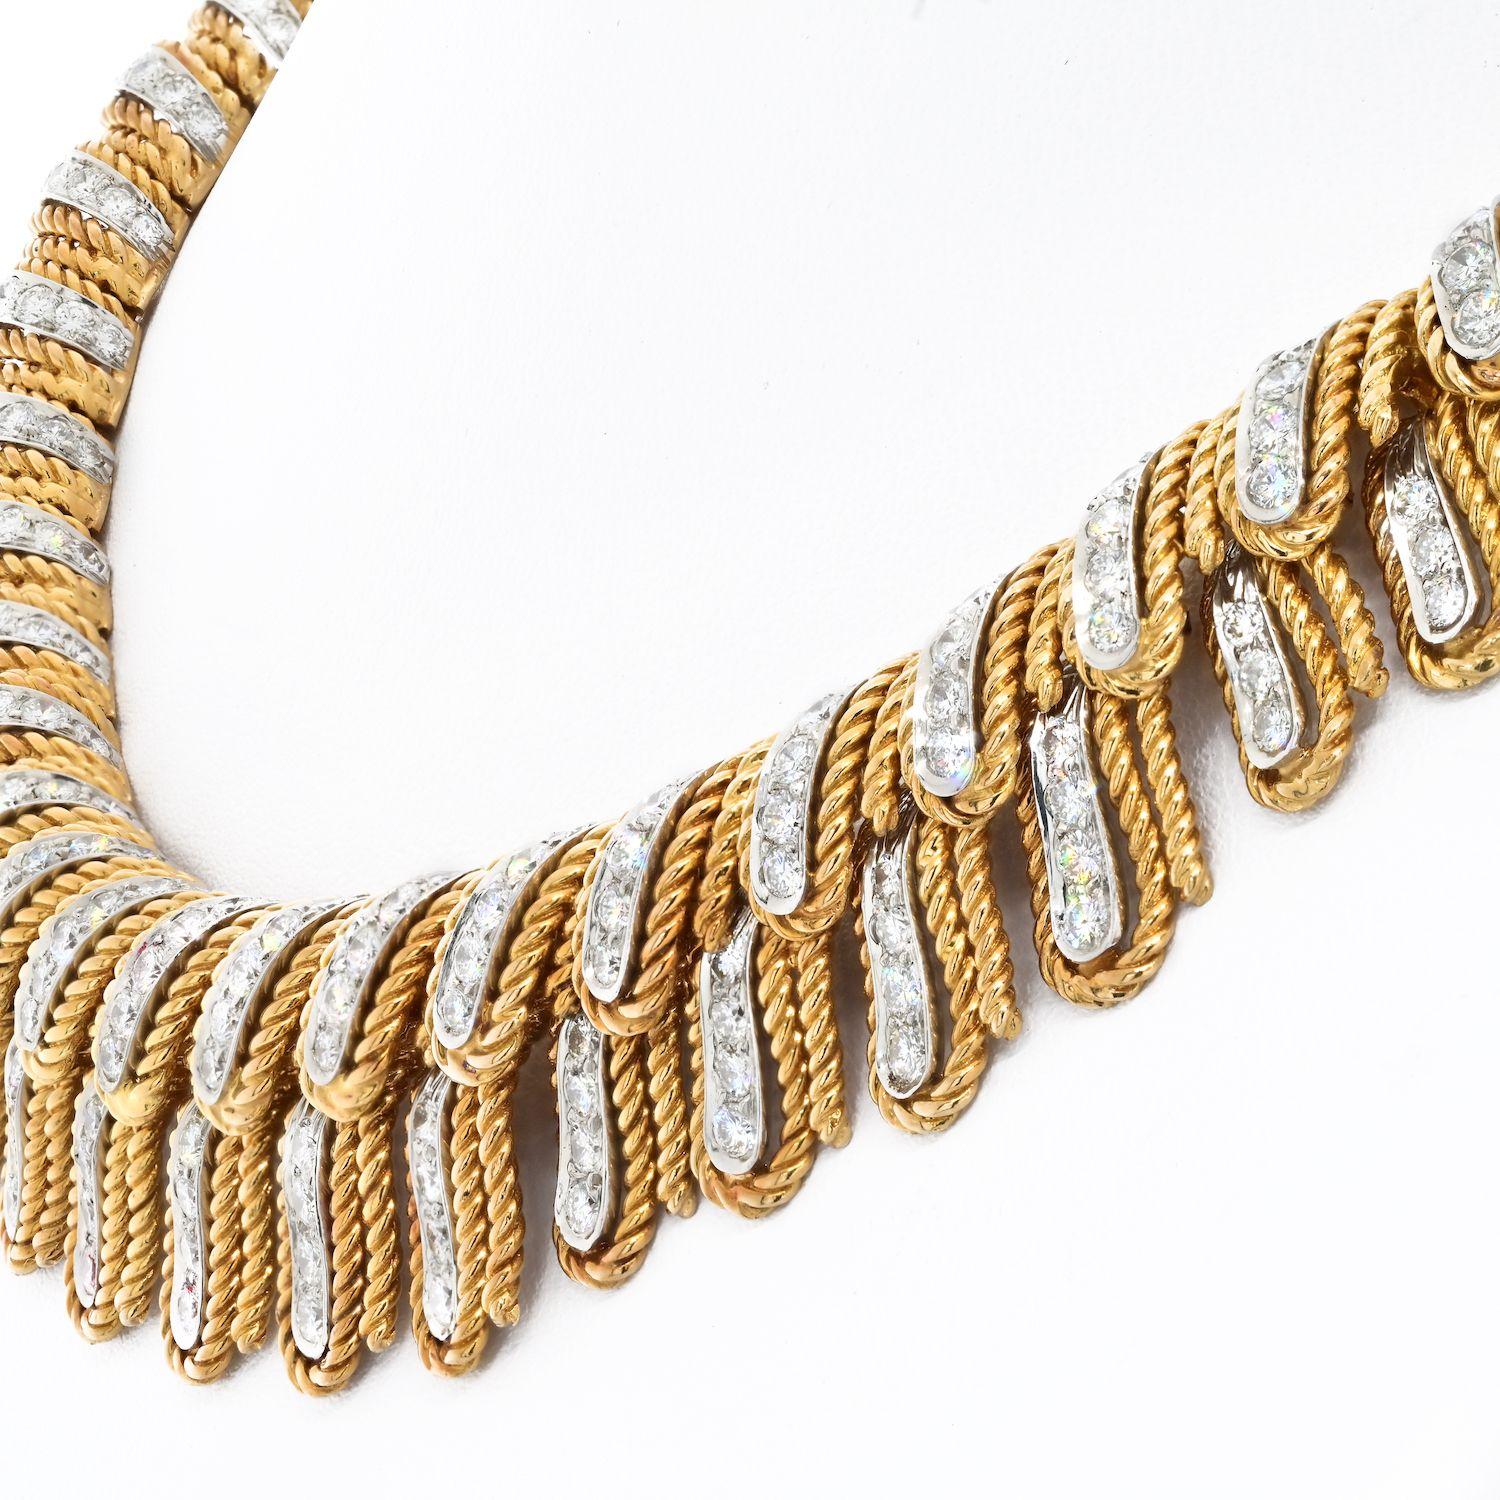 Le collier David Webb en platine 18 carats se distingue par son design unique de plumes serties de diamants entourées de cordes. La taille graduée des plumes ajoute à sa beauté et en fait un bijou spectaculaire. 
Pour mettre en valeur le collier